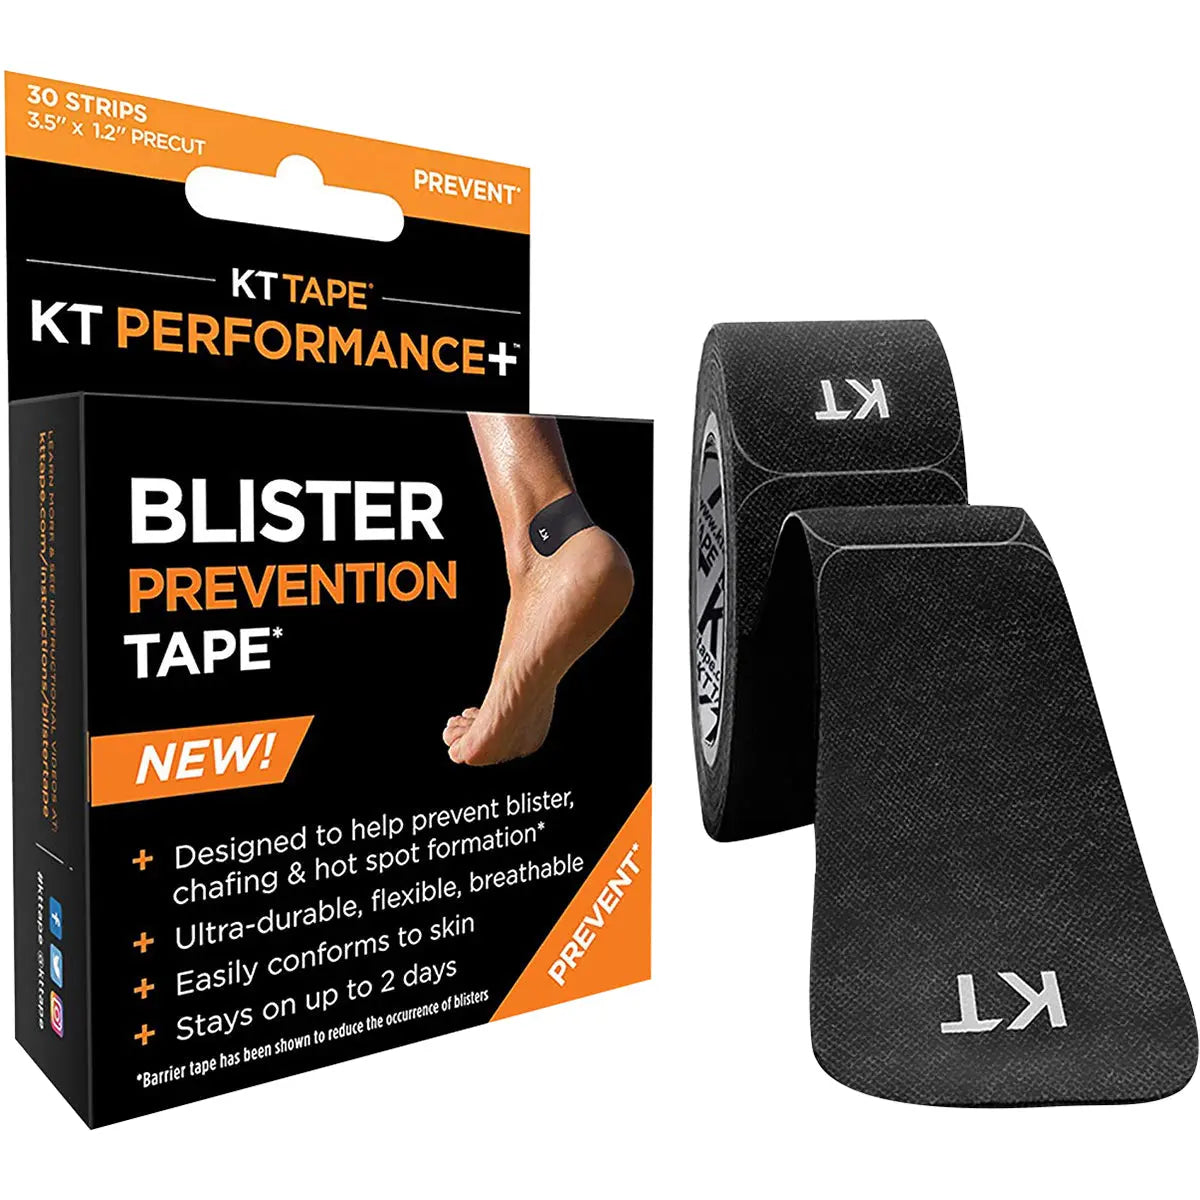 KT Tape Precut 3.5" Perfomance Blister Prevention Tape - 30 Strips KT Tape